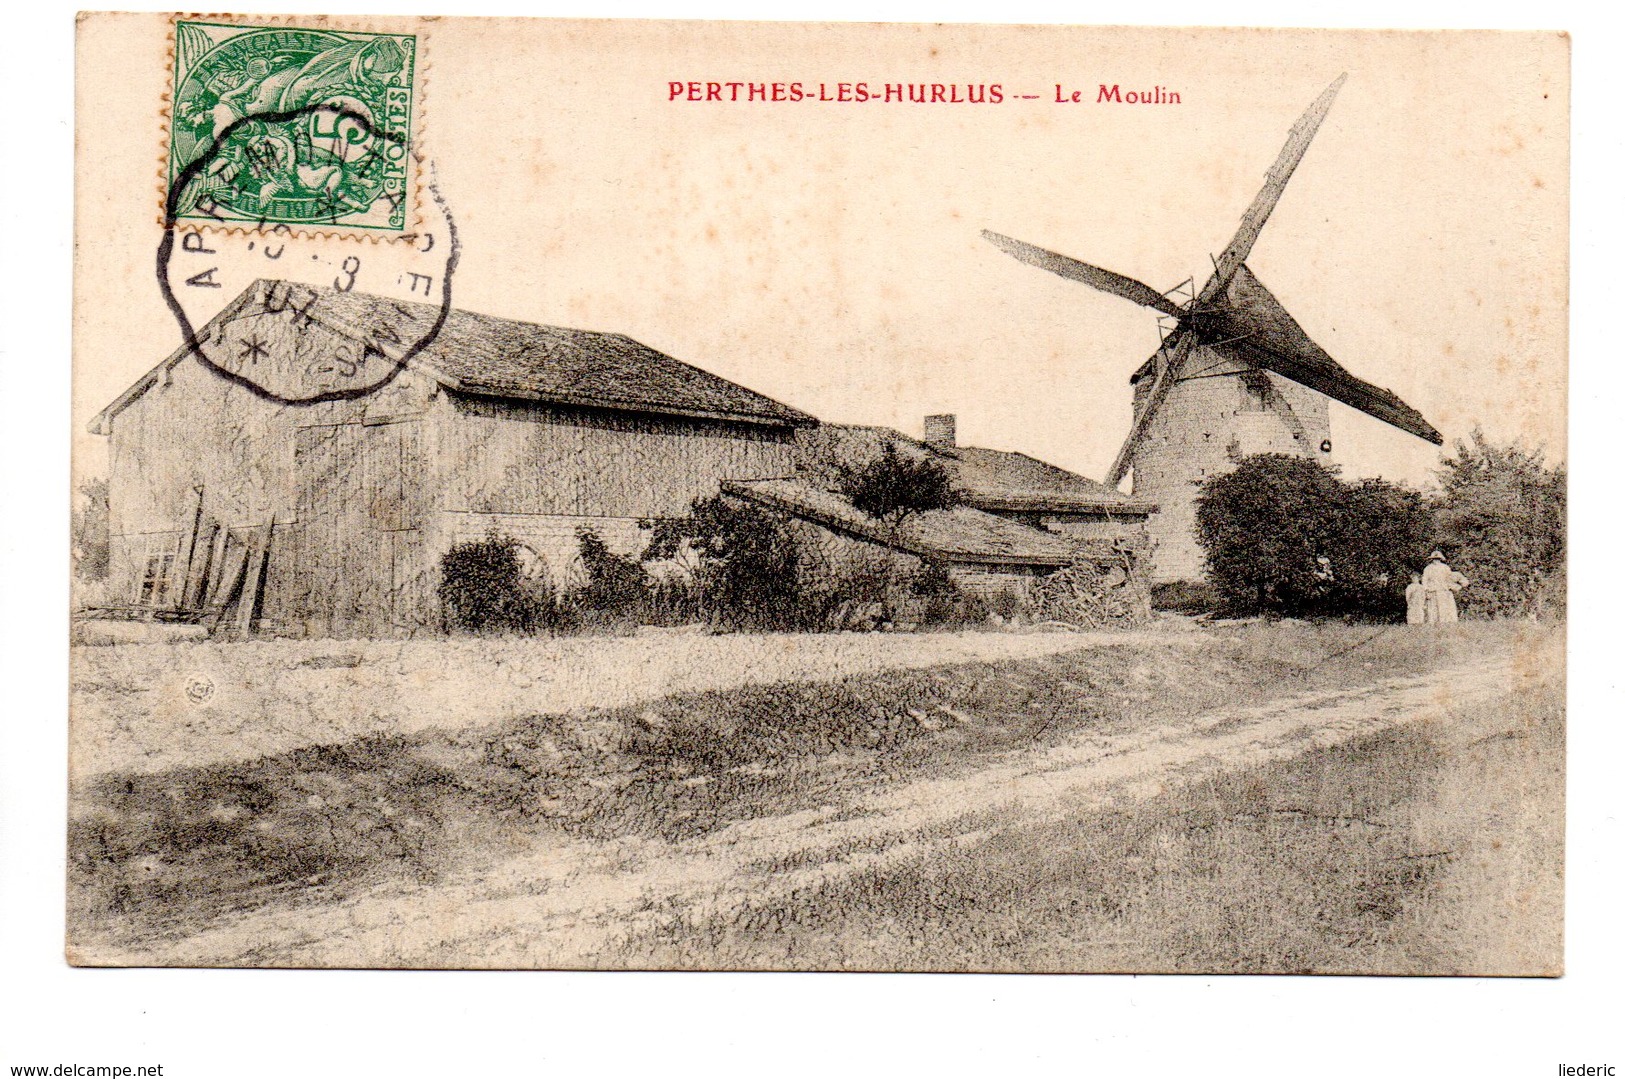 Perthes-les-Hurlus: Le Moulin - Souain-Perthes-lès-Hurlus